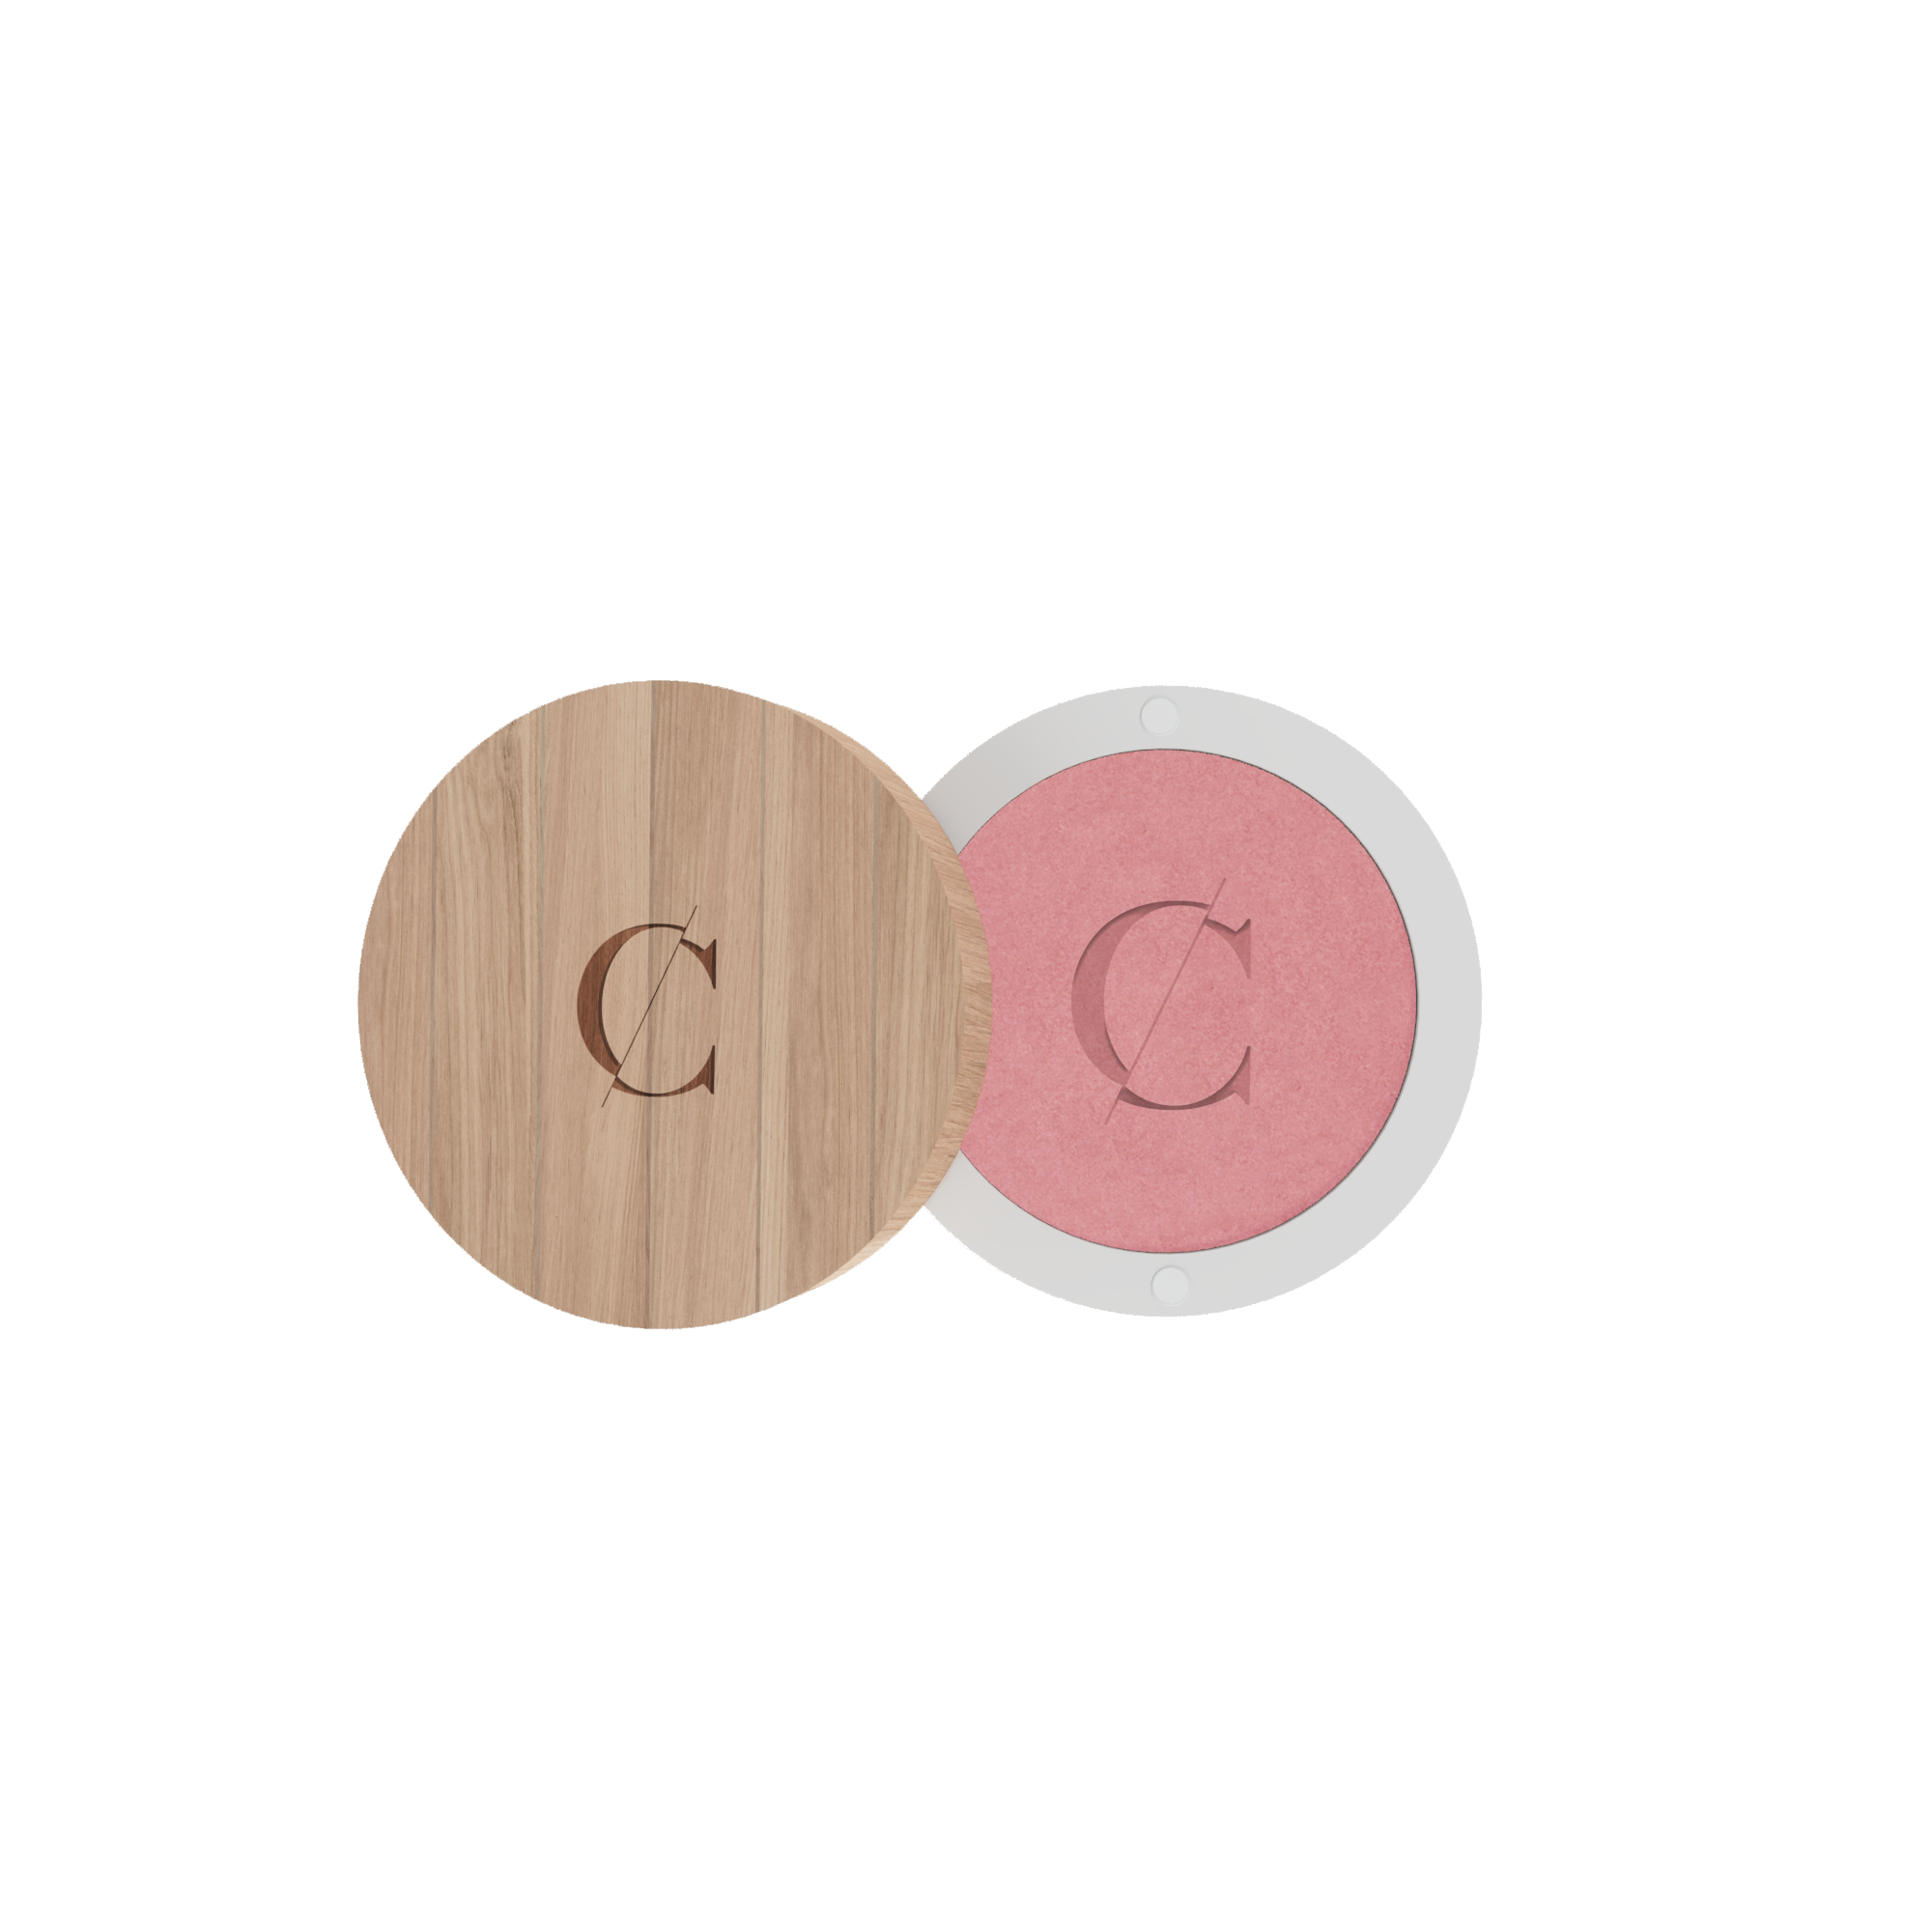 De natuurlijke en biologische oogschaduw van Couleur Caramel bevat een sterke concentratie van pigmenten. 